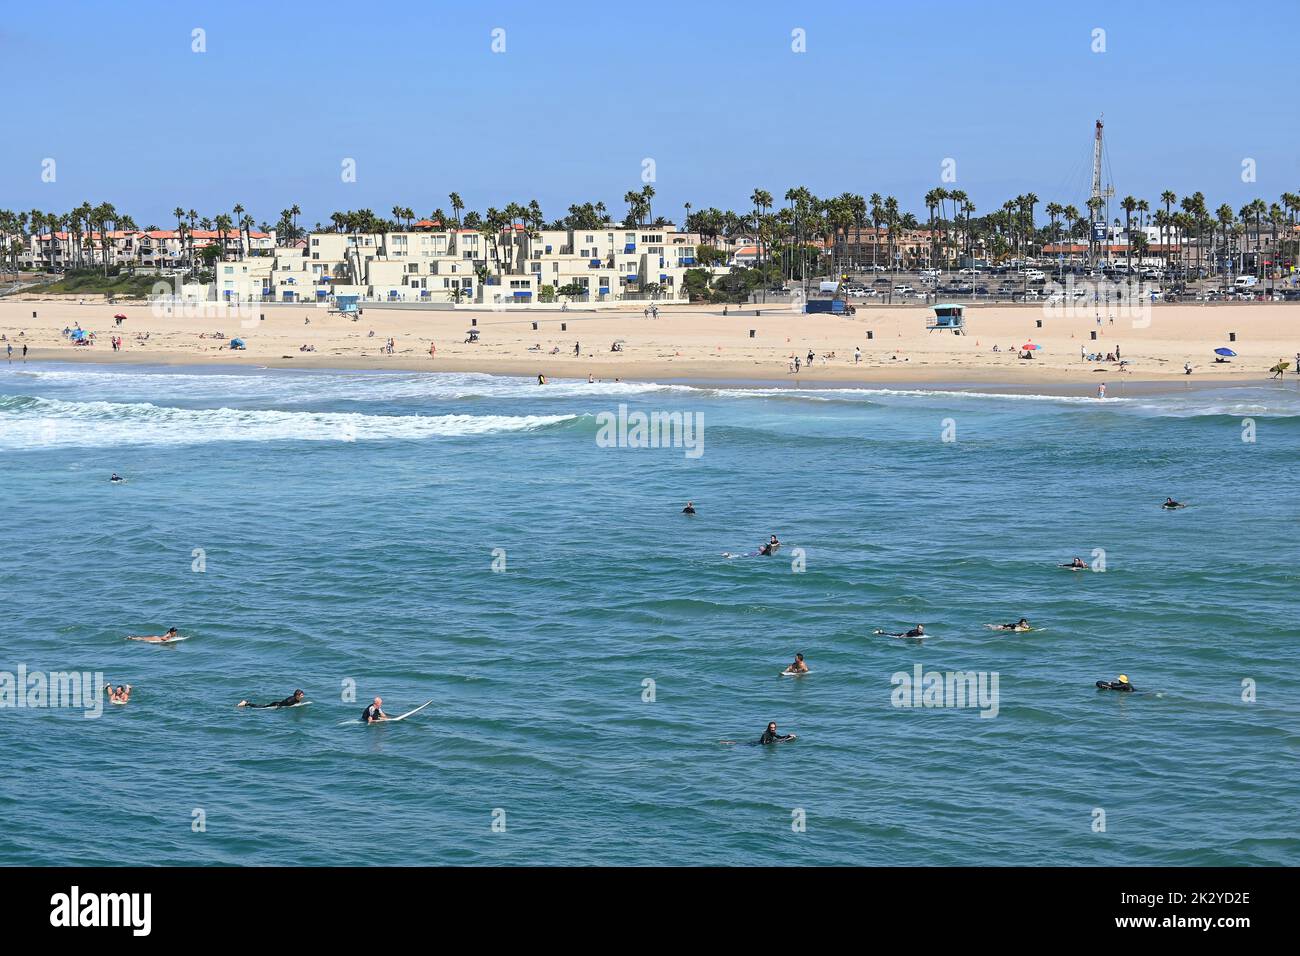 HUNTINGTON BEACH, CALIFORNIA, 19 SETTEMBRE 2022: Un grande gruppo di surfisti sulle loro tavole al molo di Huntington Beach durante il surf internazionale Foto Stock